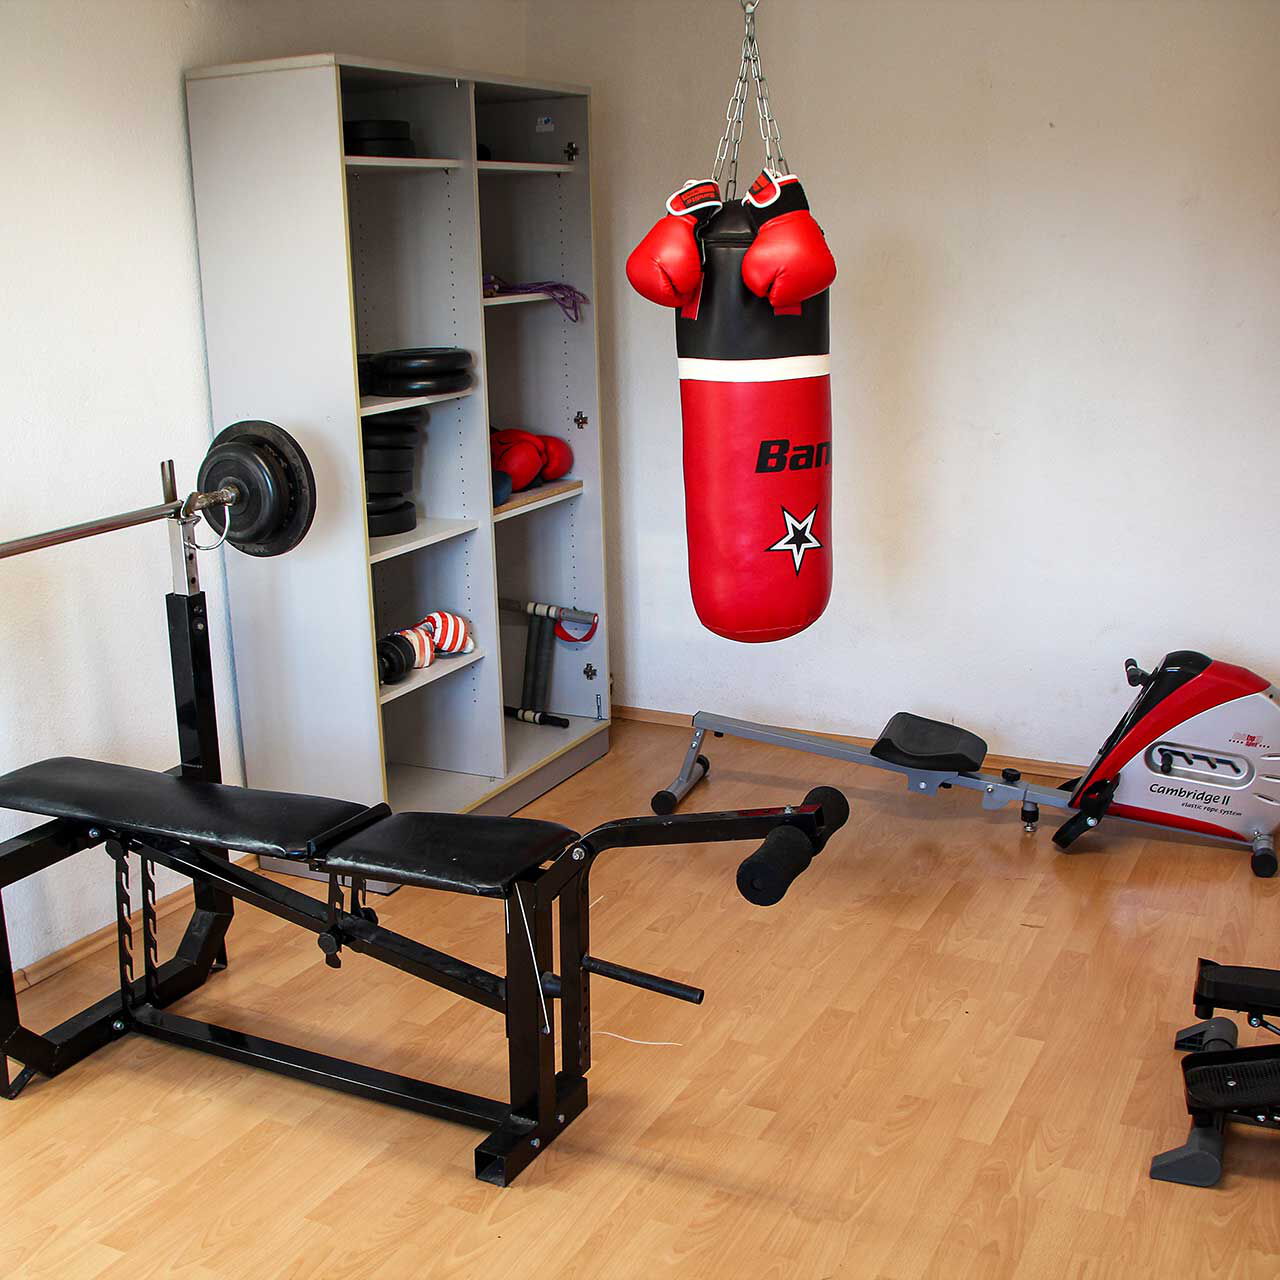 Eine Sport- und Fitnessraum mit einer Hantelbank, einem Boxsack, Schrank mit Gewichten, Stepper und Rudergerät.